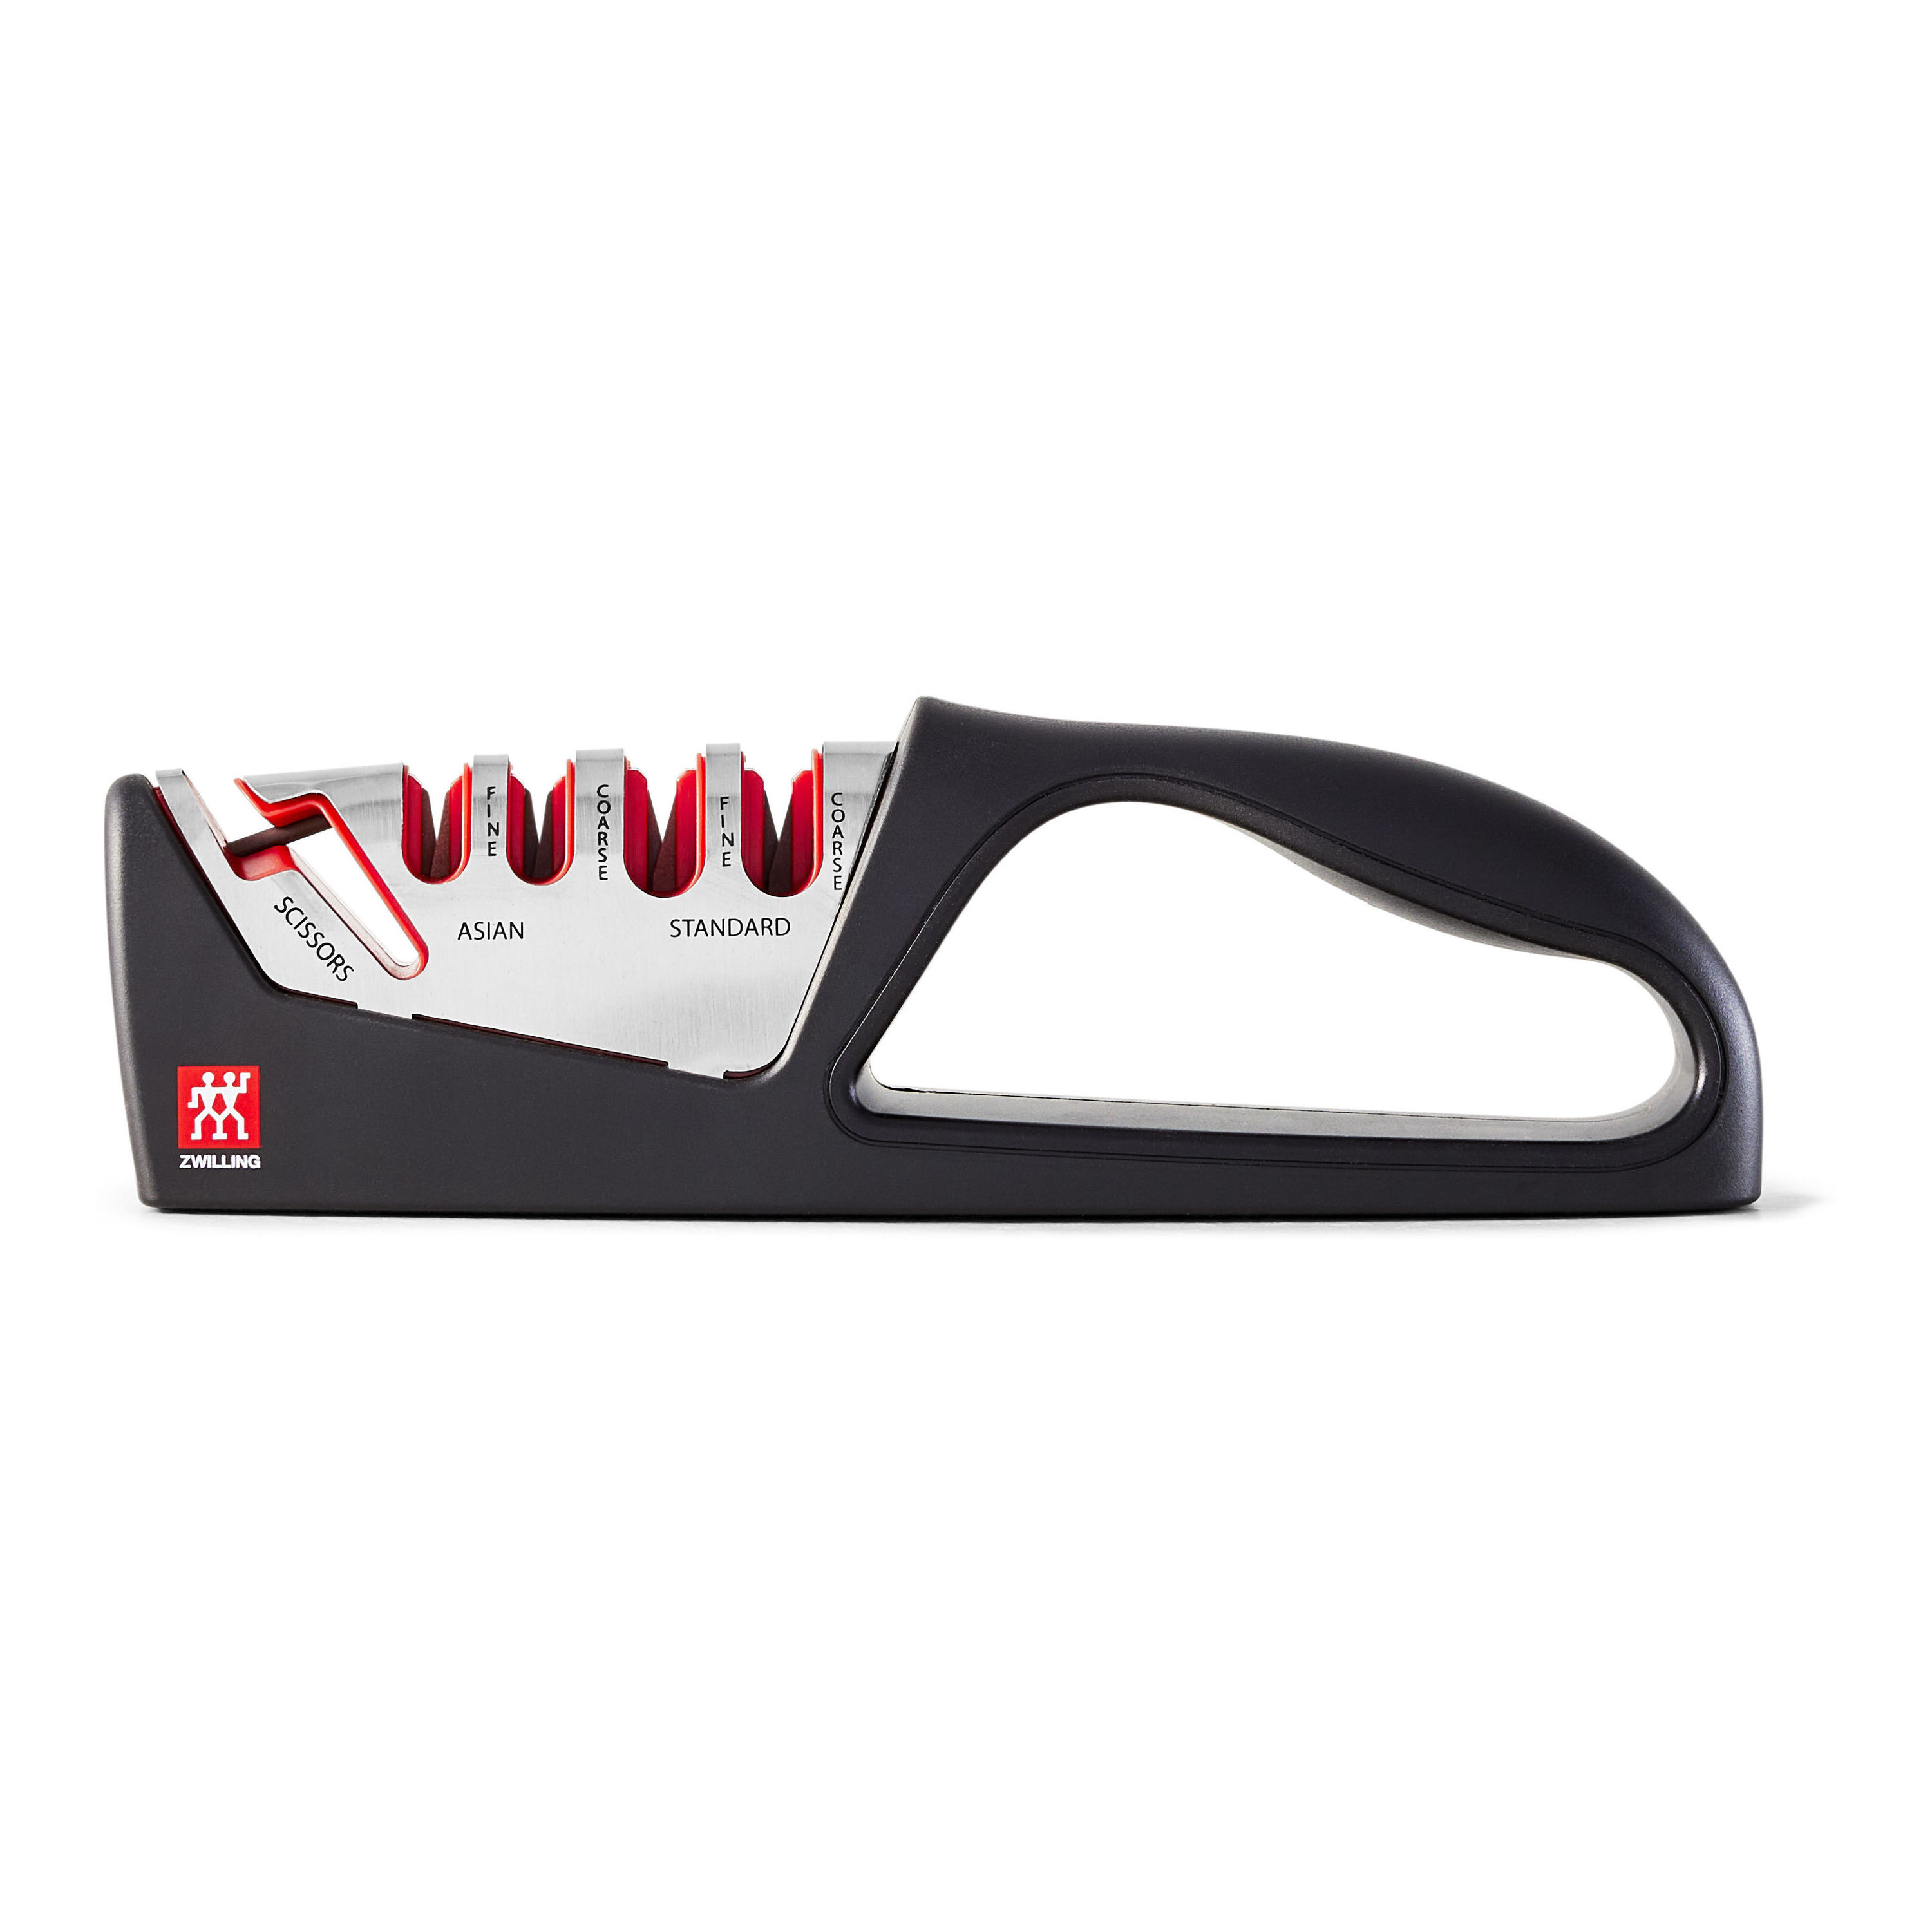 Red Knife Sharpener with Black non-slip grip - Stay sharp Block Knife  Sharpener